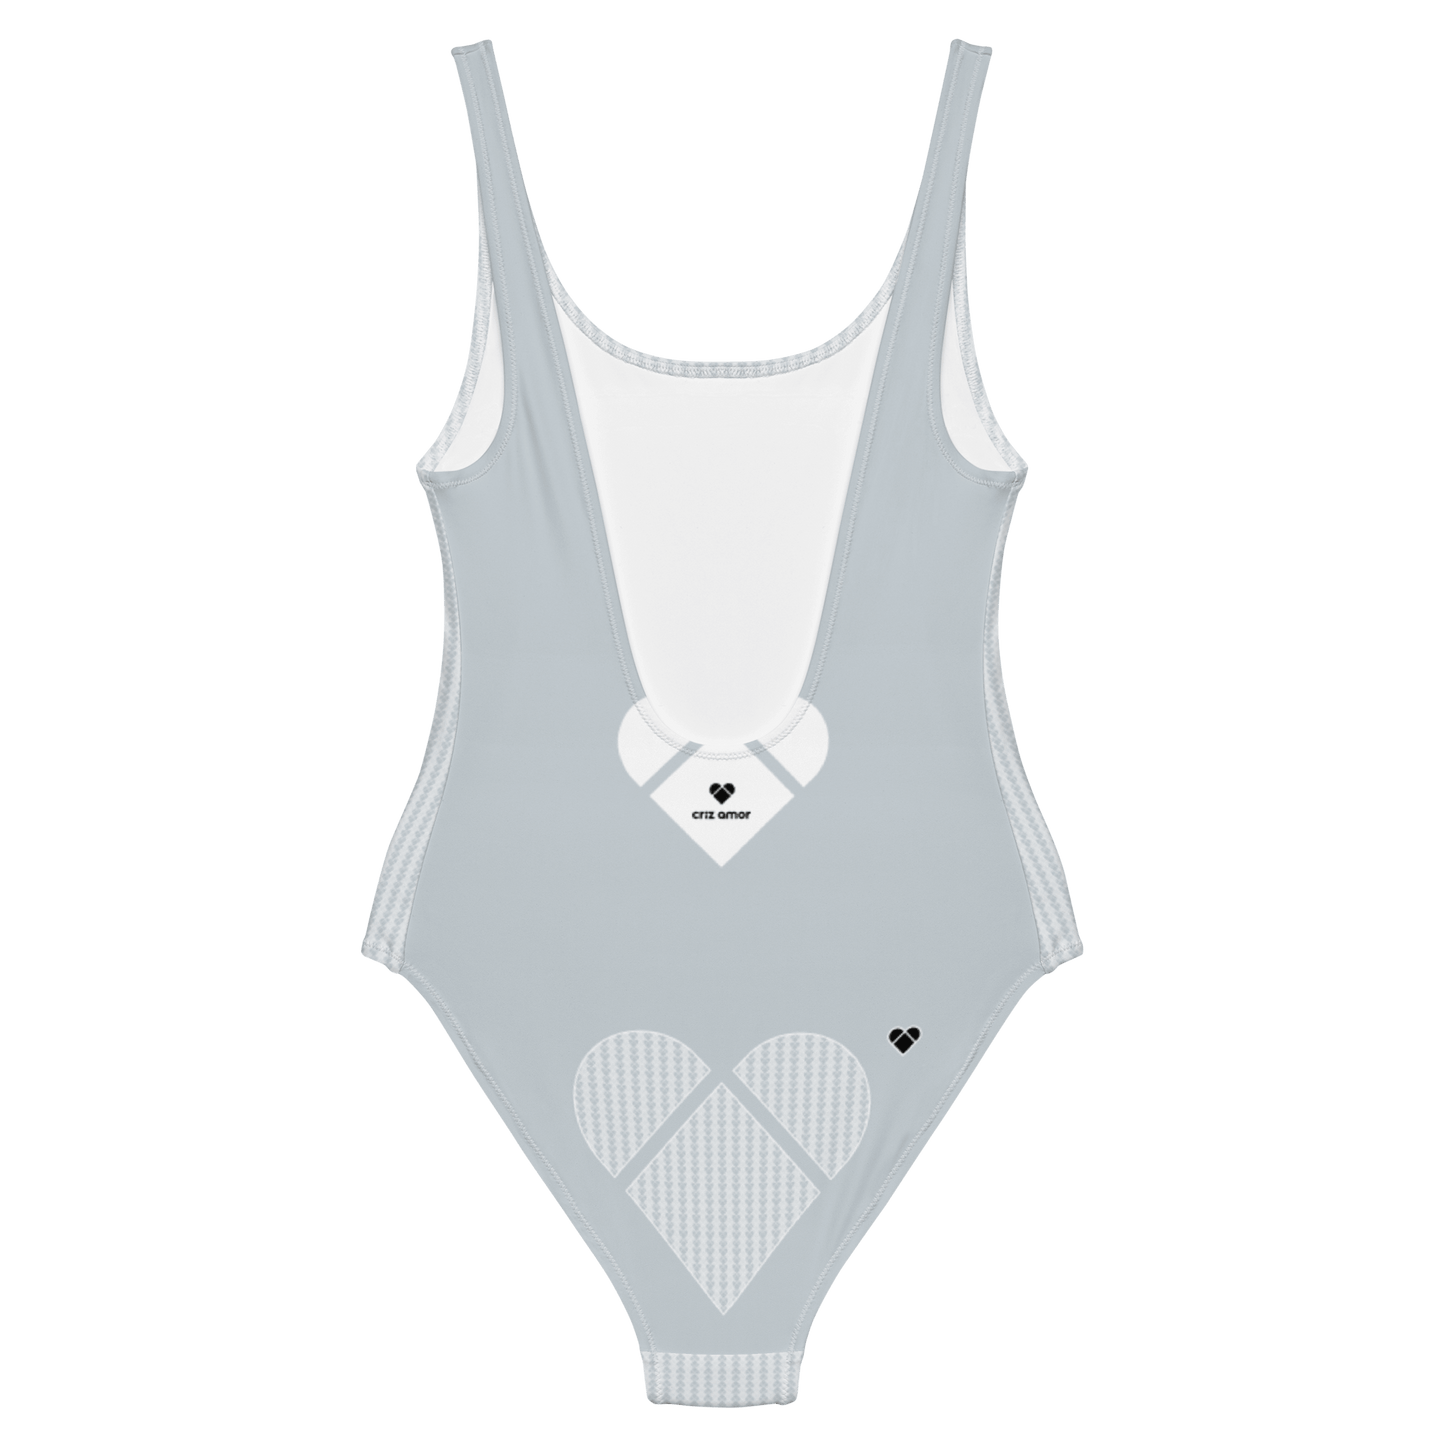 Lovogram Light Gray Swimsuit with Heart Logo